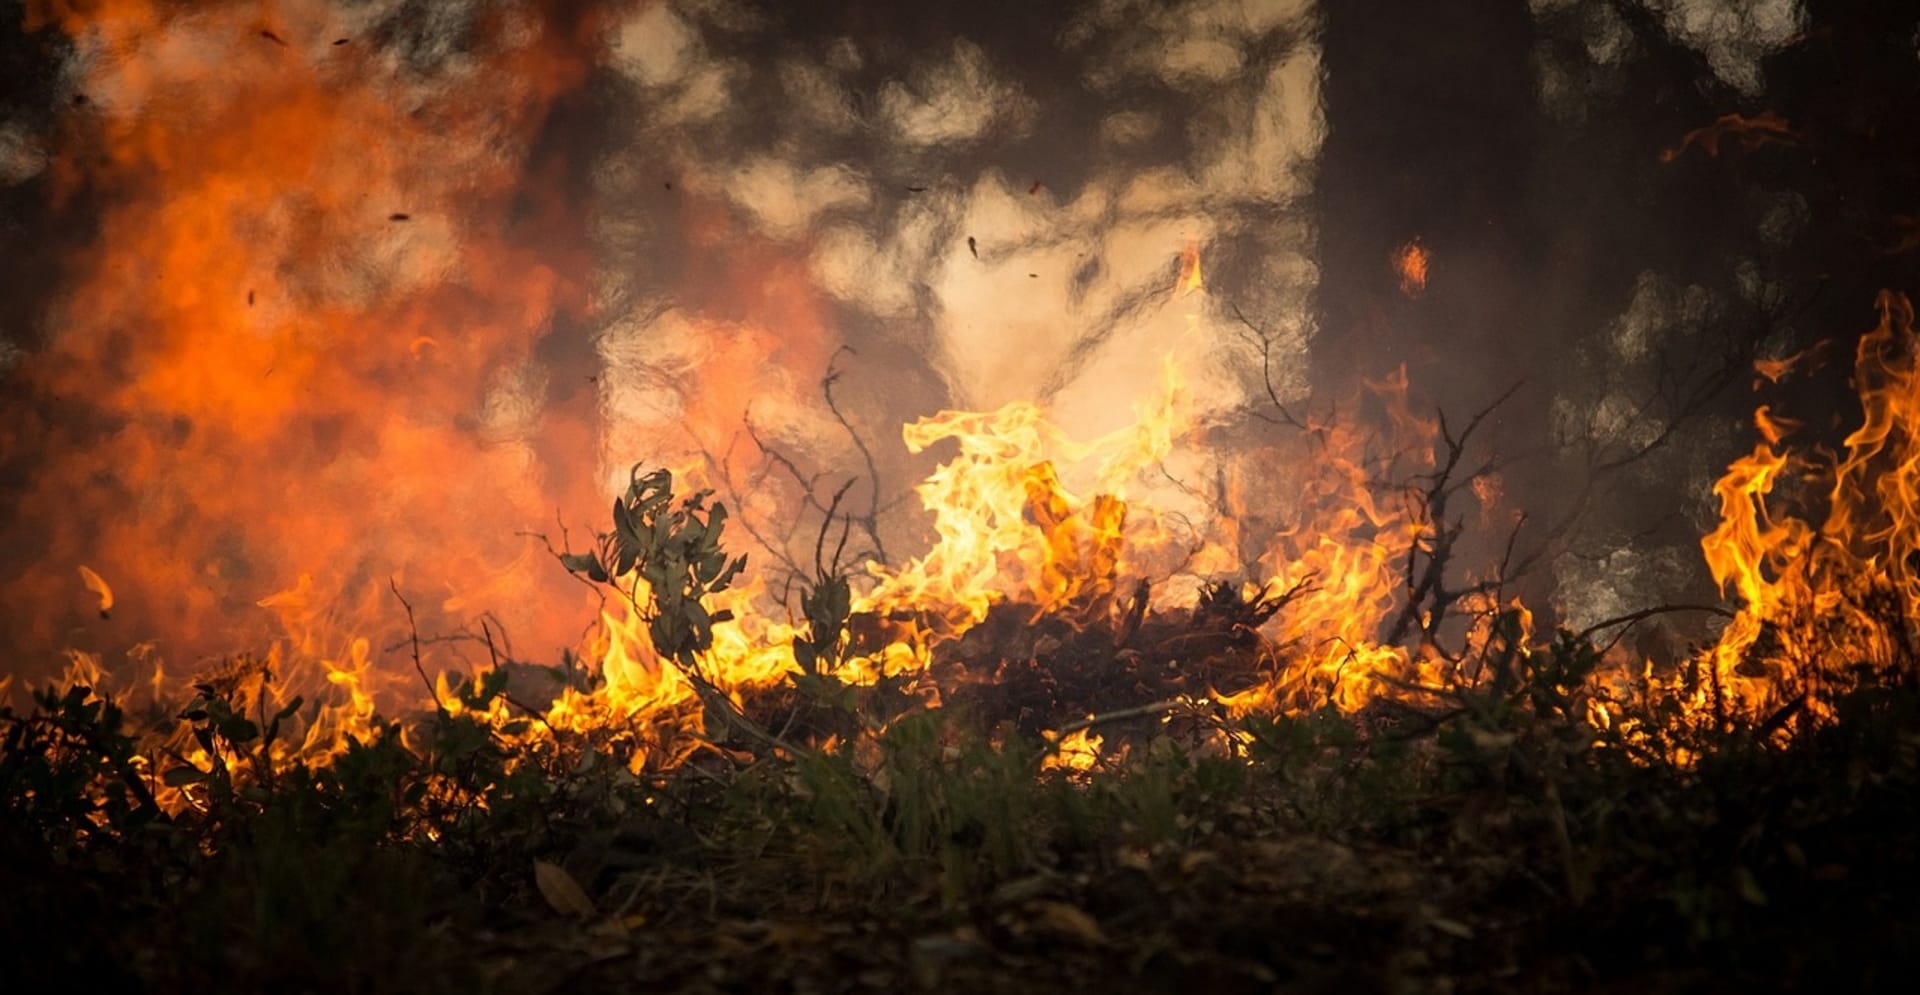 Lesní požár znamená smrt mnoha tvorů